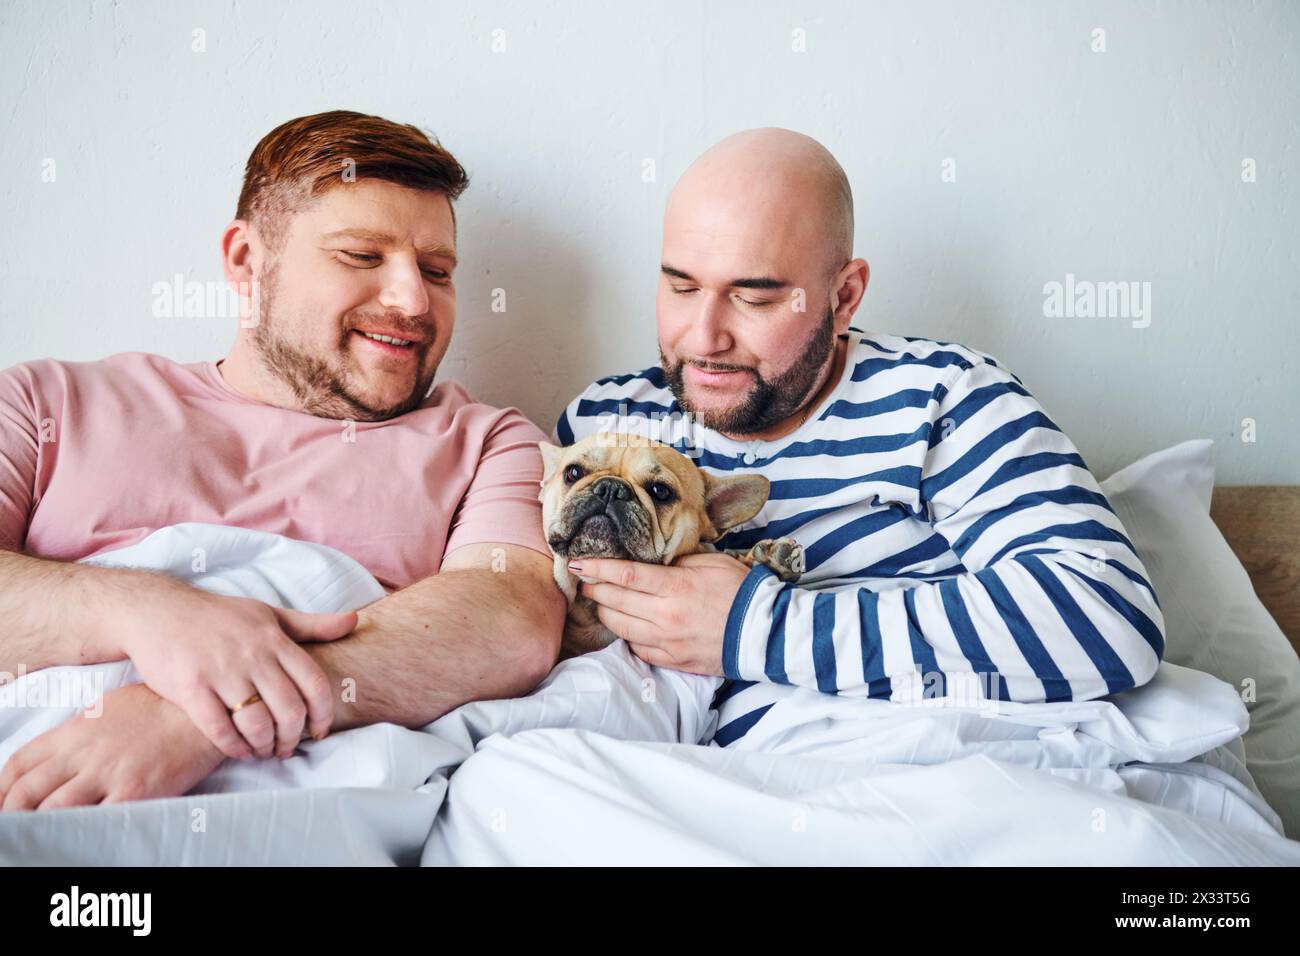 Zwei Männer halten einen kleinen Hund auf einem Bett. Stockfoto